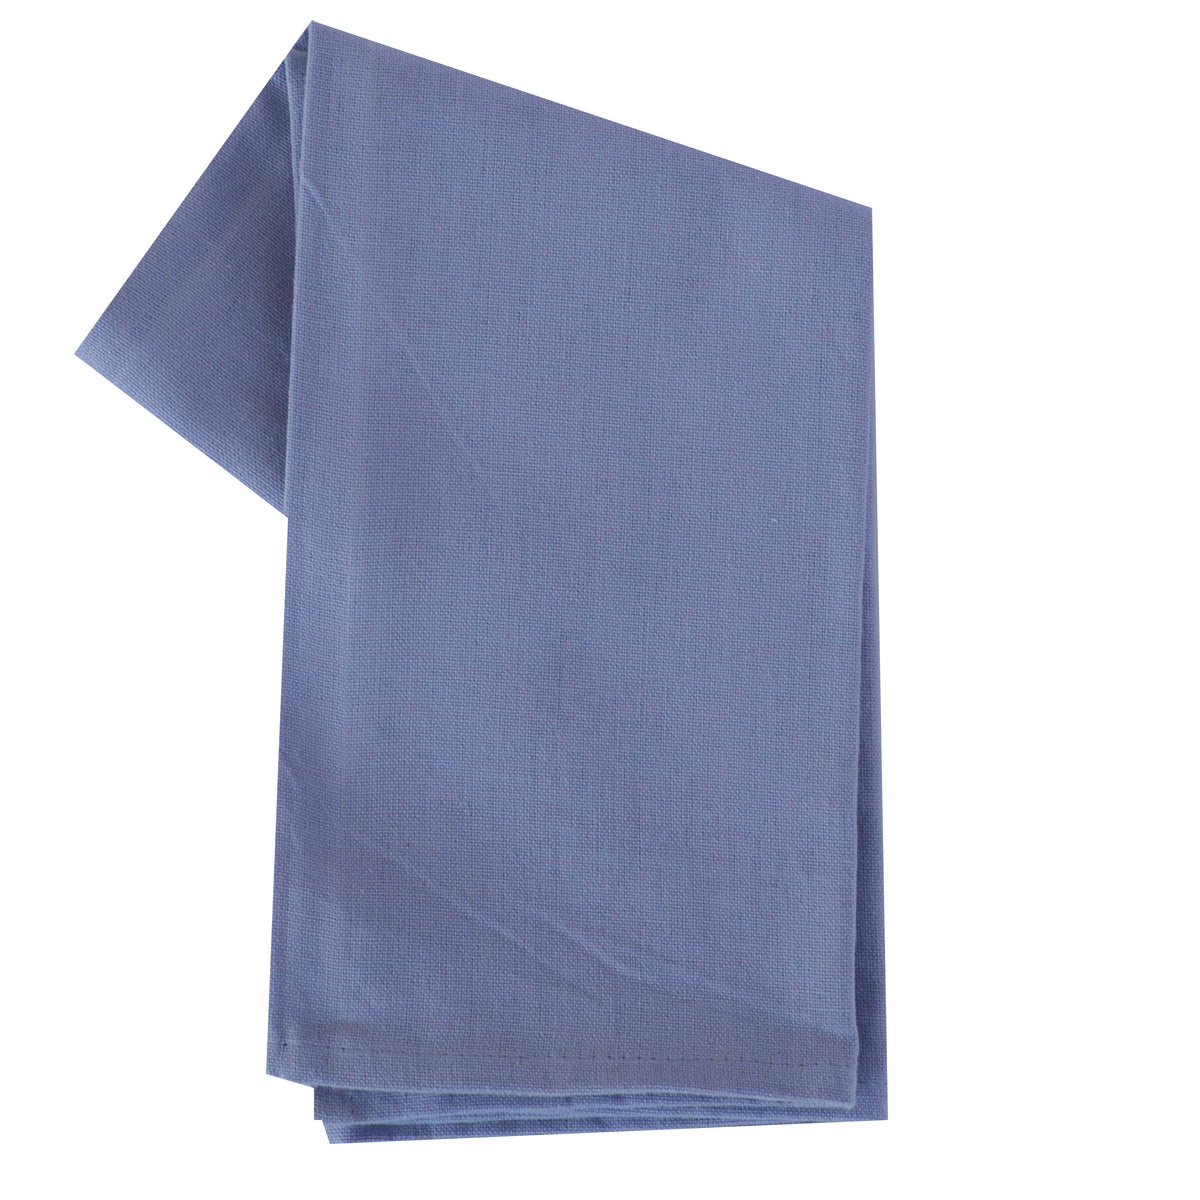 Variety Towel Set - Purple Set of 4